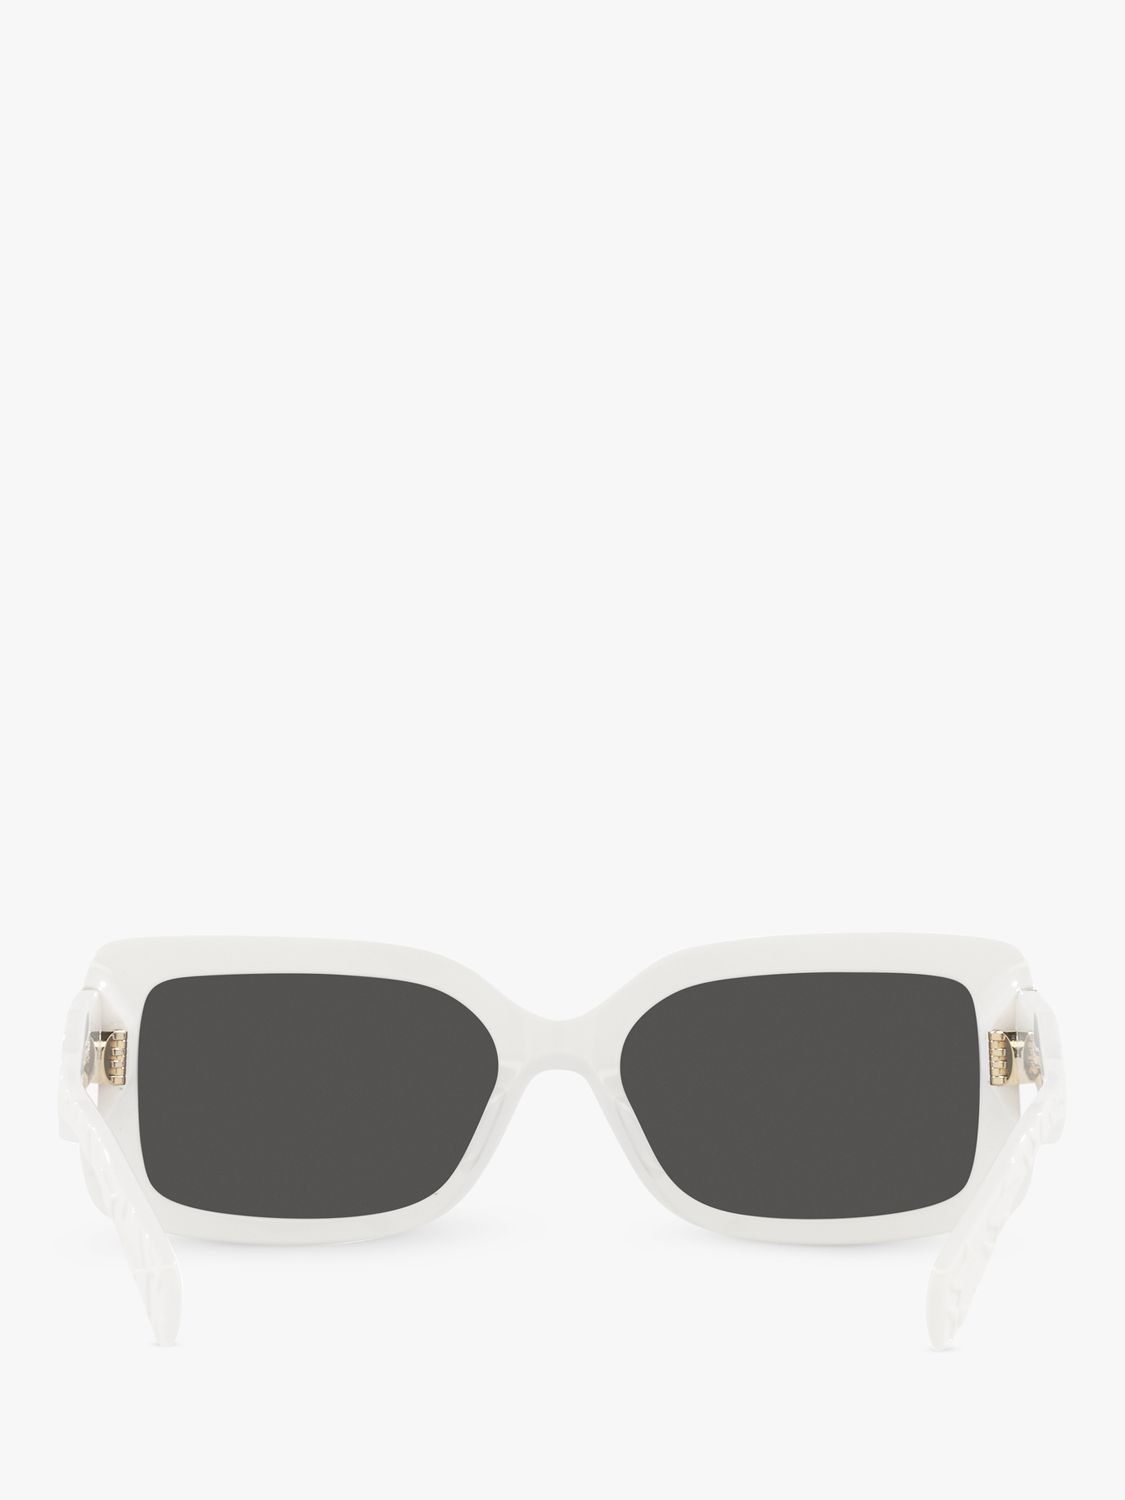 Michael Kors MK2165 Women's Corfu Rectangular Sunglasses, Optic White/Grey